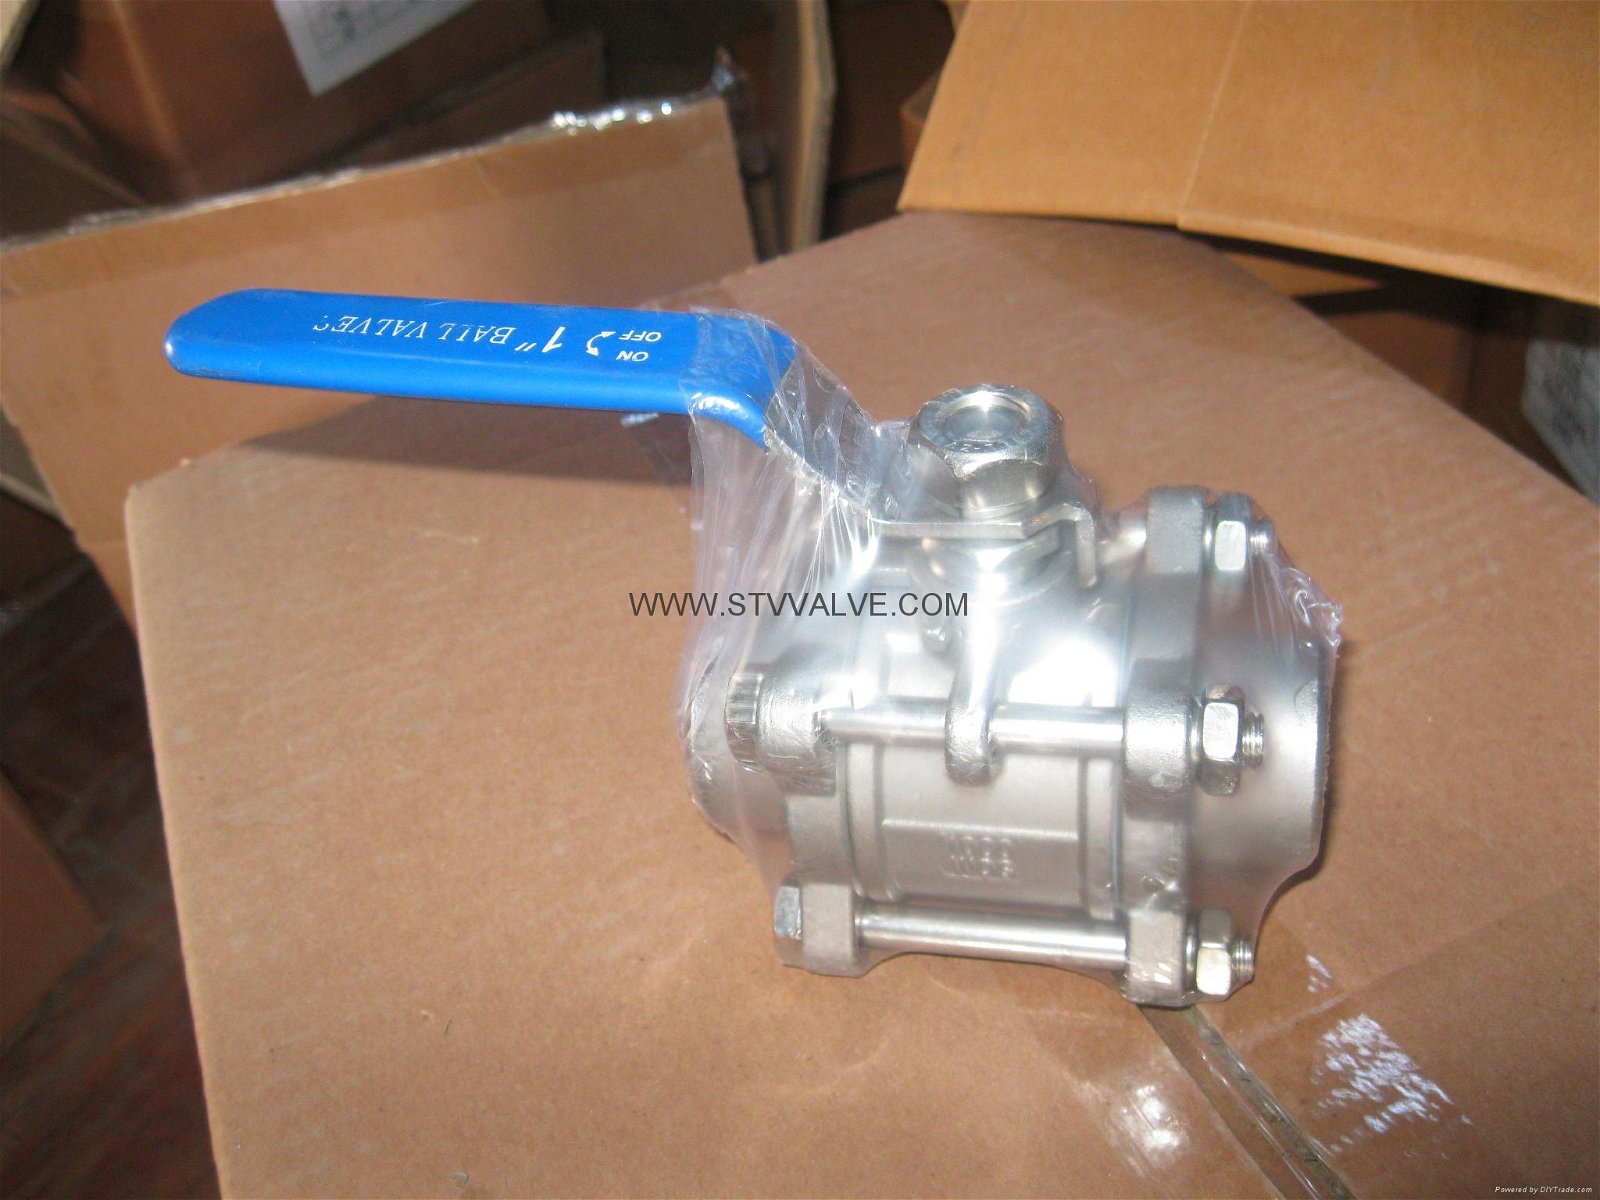  welded ball valve 5